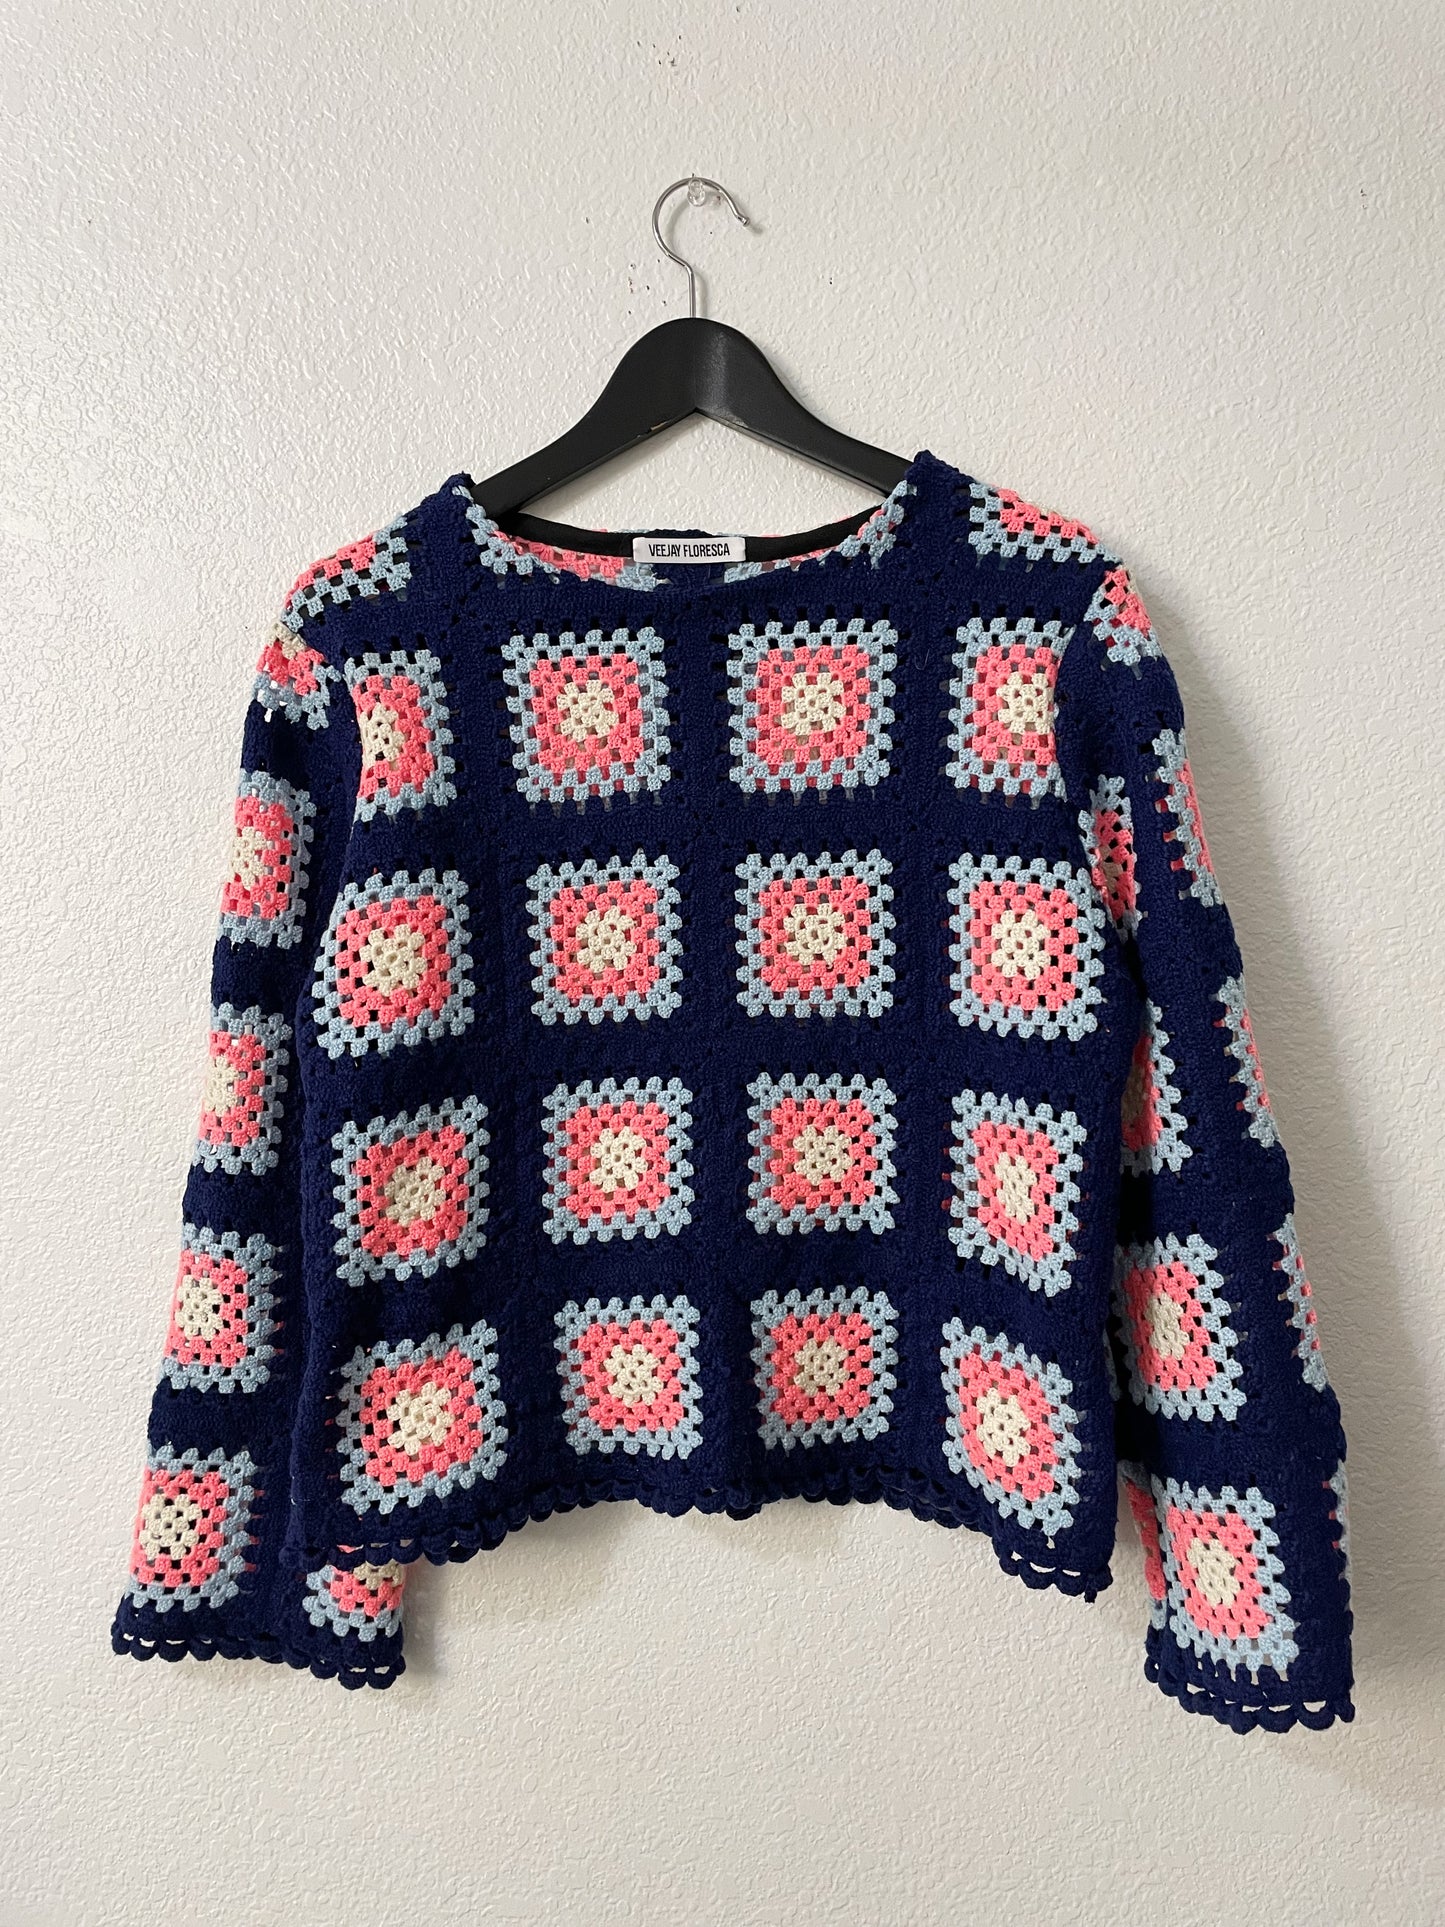 Hand-crocheted Shirt - S/M